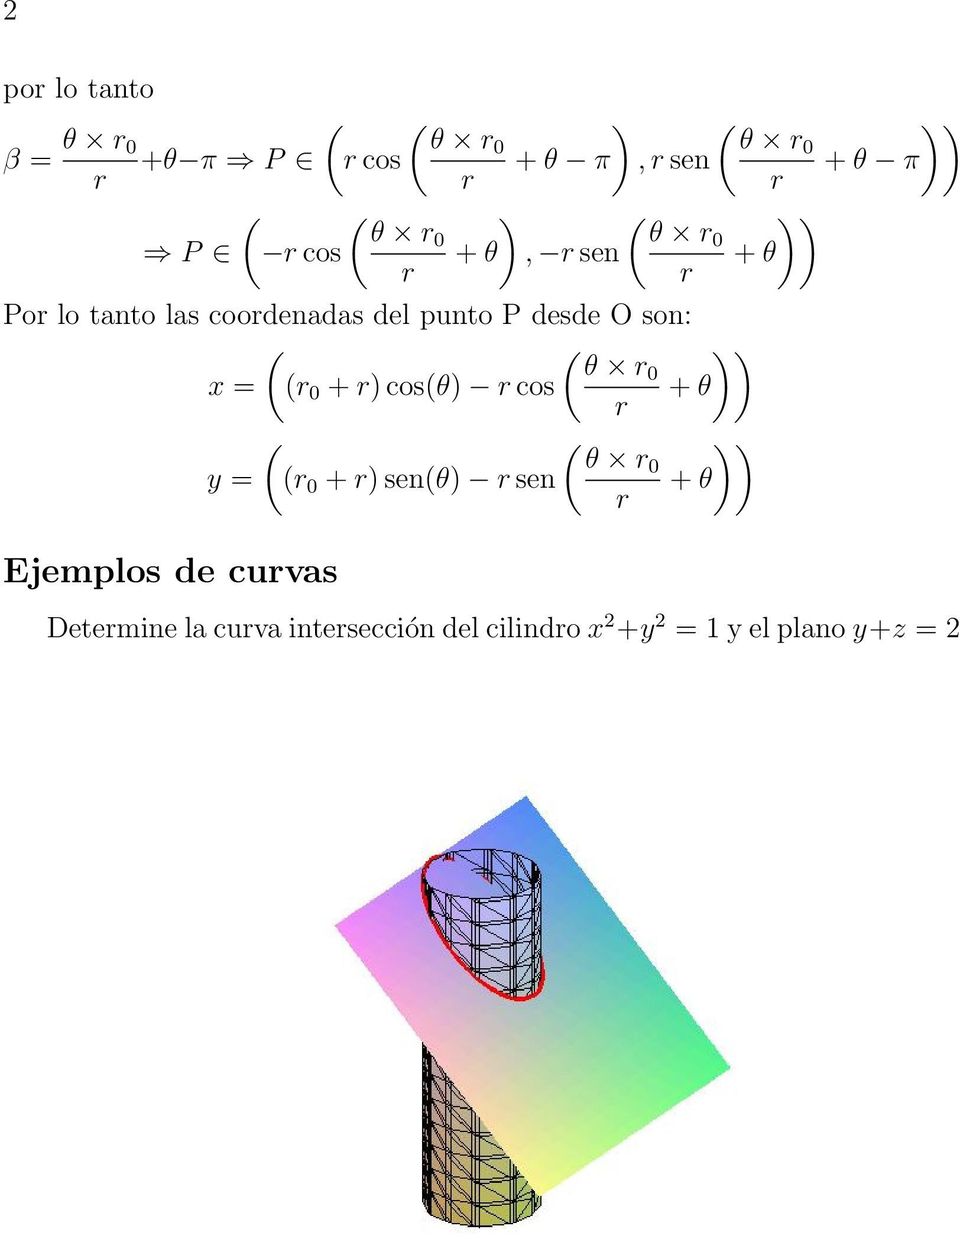 0 + ) cos(θ) cos + θ ( ( )) θ 0 y = ( 0 + ) sen(θ) sen + θ Ejemplos de cuvas ))